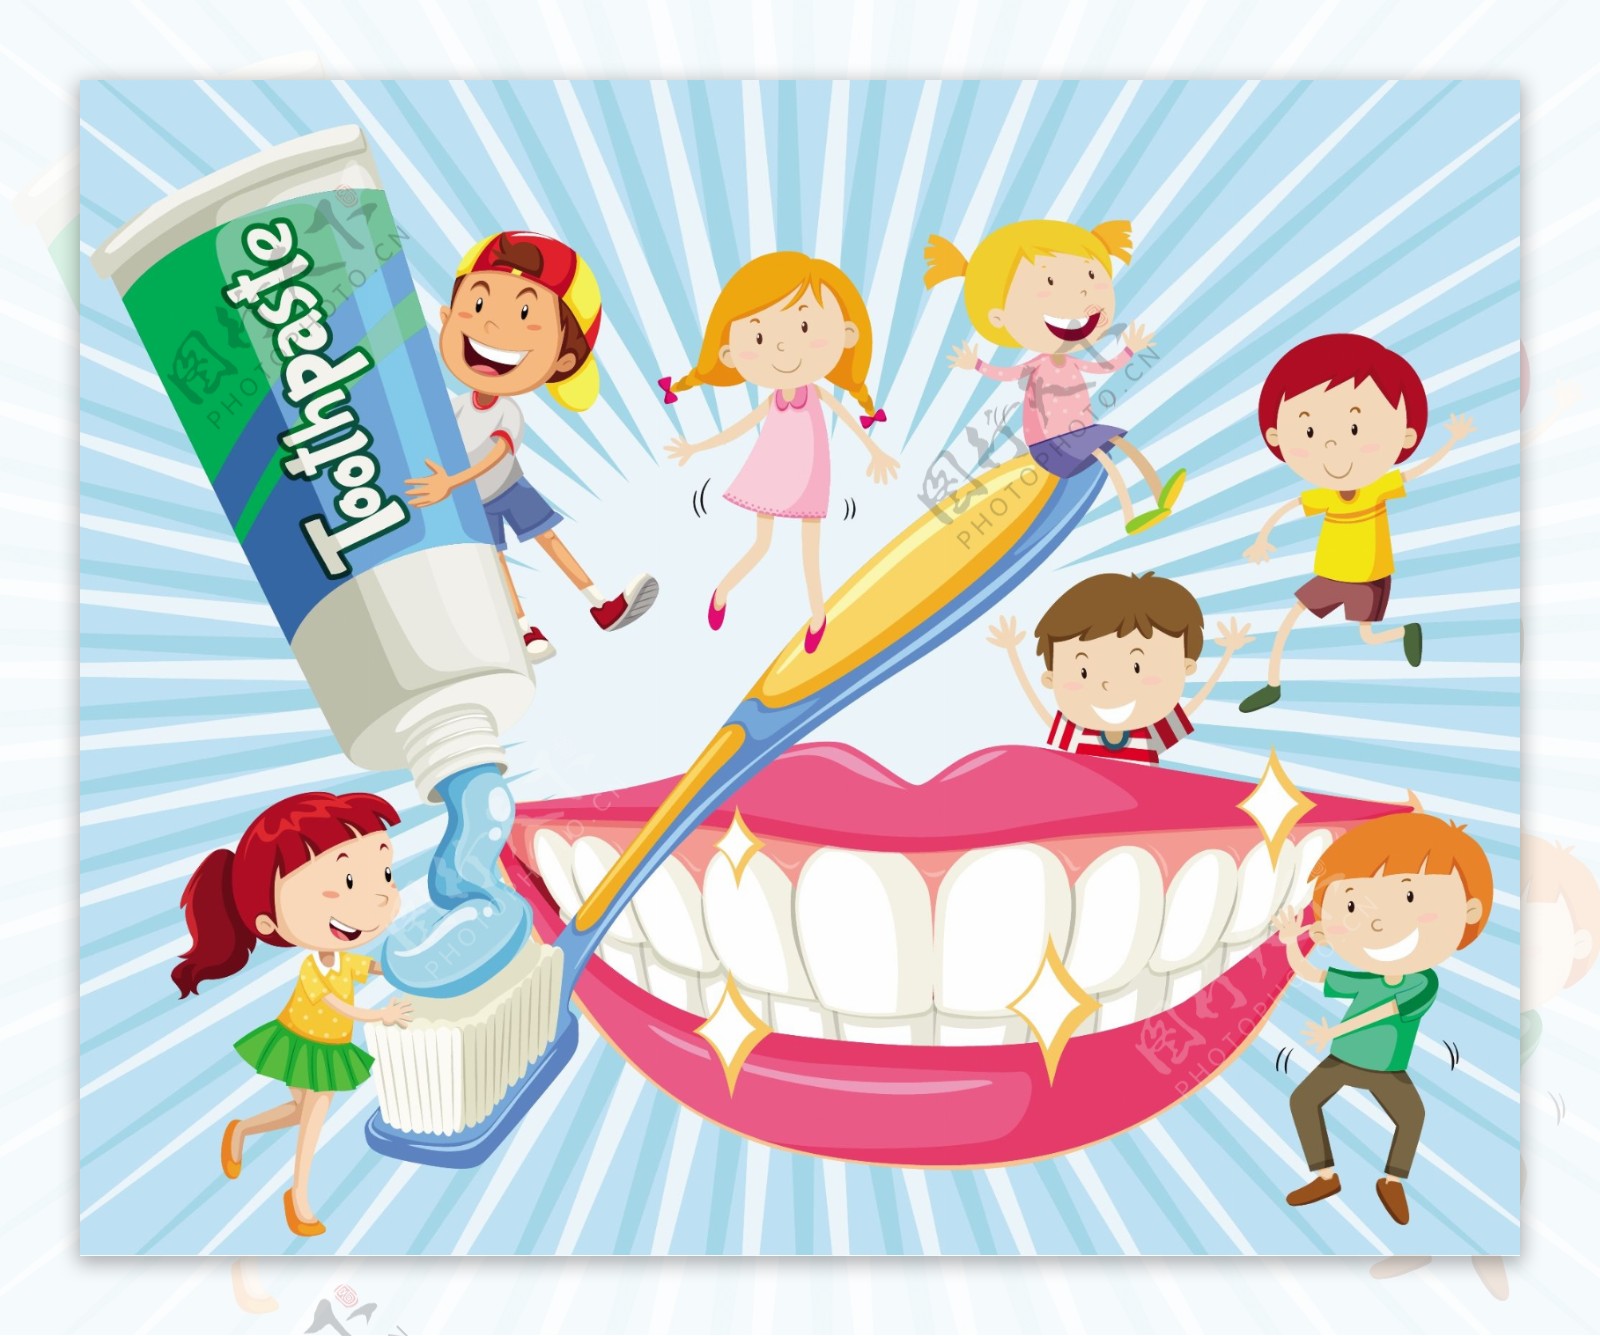 卡通用牙刷刷牙的7个儿童